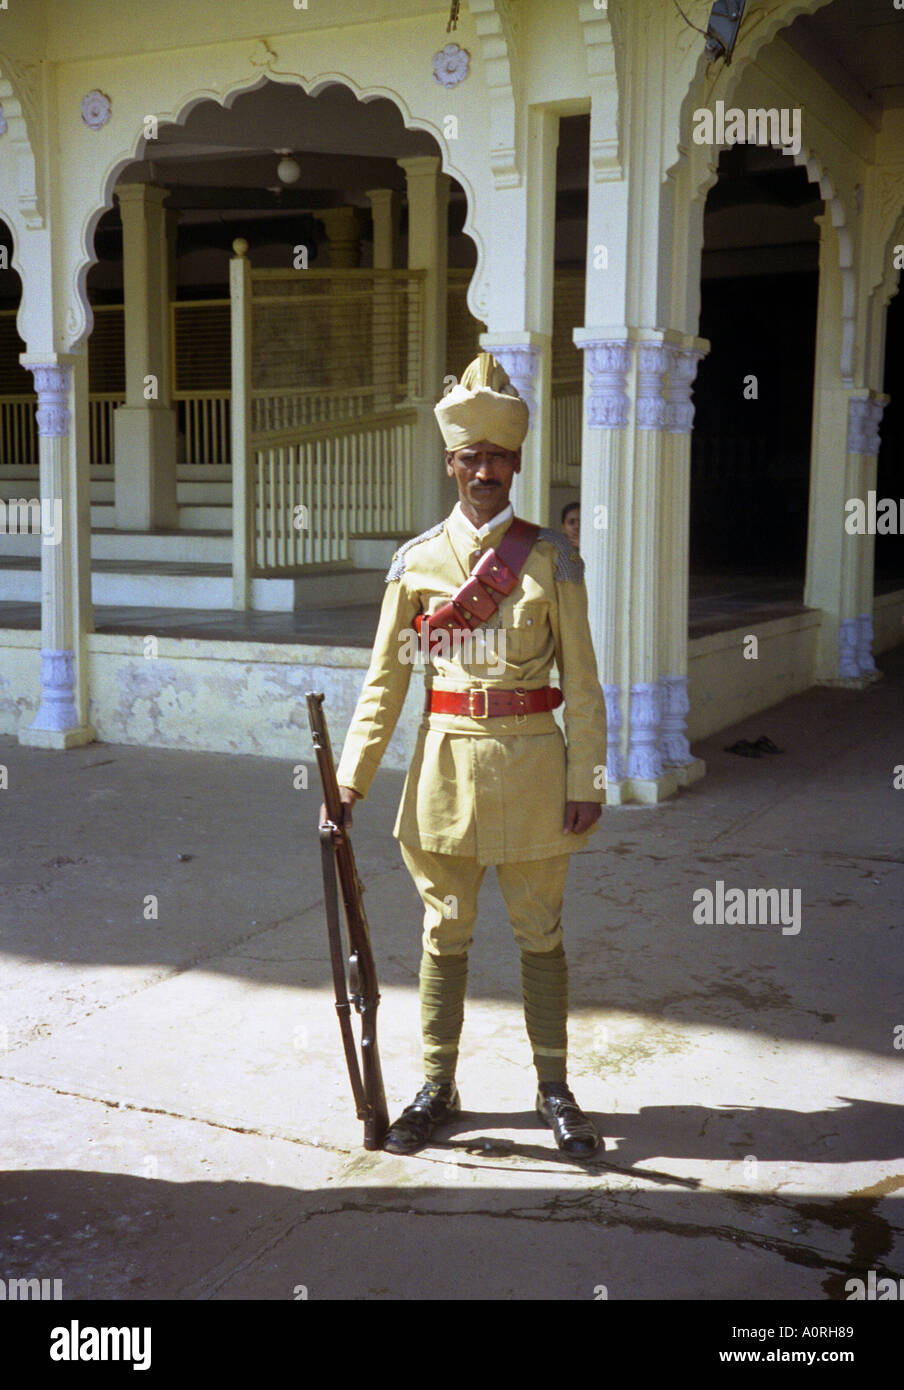 Portrait man stand posent une tradition de la rue de la garde impériale coloniale turban fusil hat Mysore Karnataka Inde Asie du Sud Banque D'Images